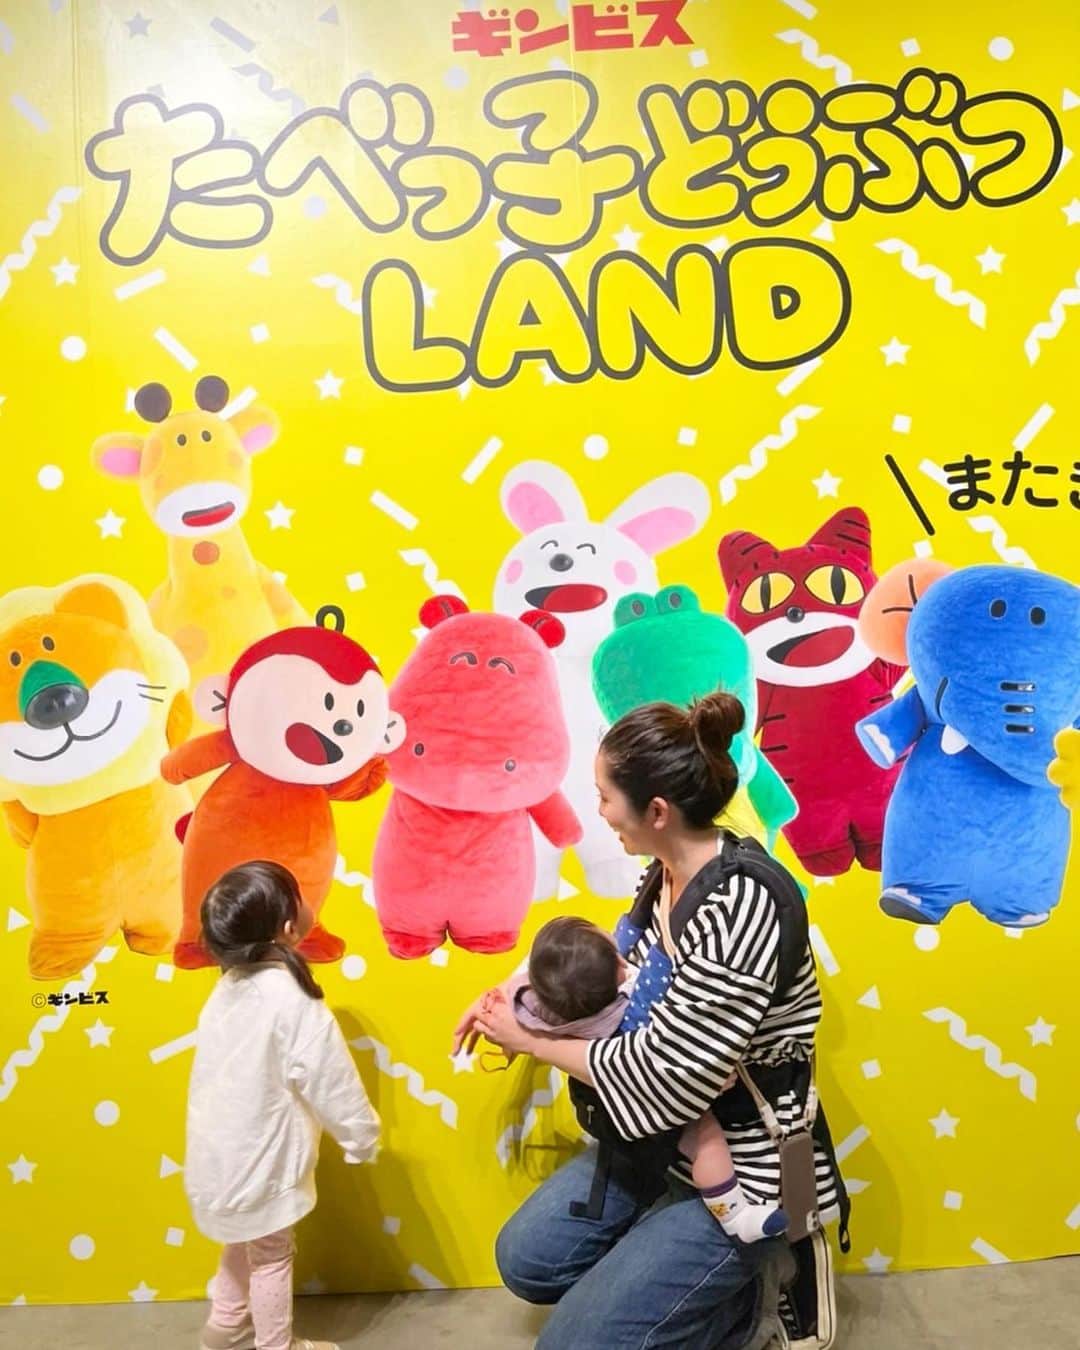 りかみし（みしまりか）のインスタグラム：「東京ドームシティ GalleryAaMoで開催されている たべっ子どうぶつのイベントへ家族で行ってきました🐰  プロジェクションマッピングやキャラクターグリーティングもあって子供たち大喜び🌼  キャラグリはネコちゃんとだったんだけど子供2人ともすごい近くにいても全然怖がらなくて楽しんでいた✨ 楽しませてくれたネコちゃんありがとう😂  フードも可愛くて食べるのもったいない💓 ハンバーガーとドーナツを頼んだけど、人気のどうぶつケーキとマカロンアイスは数量限定で間に合わなかったから狙ってる人は早めの時間に行ってね！ しっかり写真におさめて完食いたしました🤭  物販コーナーもあってこれまでグッズ化していないキャラの販売もしてるみたい😙 チケットがなくてもグッズは買えるよ🙆‍♀️  ノベルティでもらえたコースターが👧🏼は気に入ってずっと持ってたよ✨  5月14日までやっているので気になってる人は是非！ 室内だから天気も気にしなくて大丈夫だったよ🙆‍♀️  #たべっ子どうぶつ #たべっ子どうぶつLAND #たべっ子どうぶつ_pr #期間限定イベント #ギンビス」